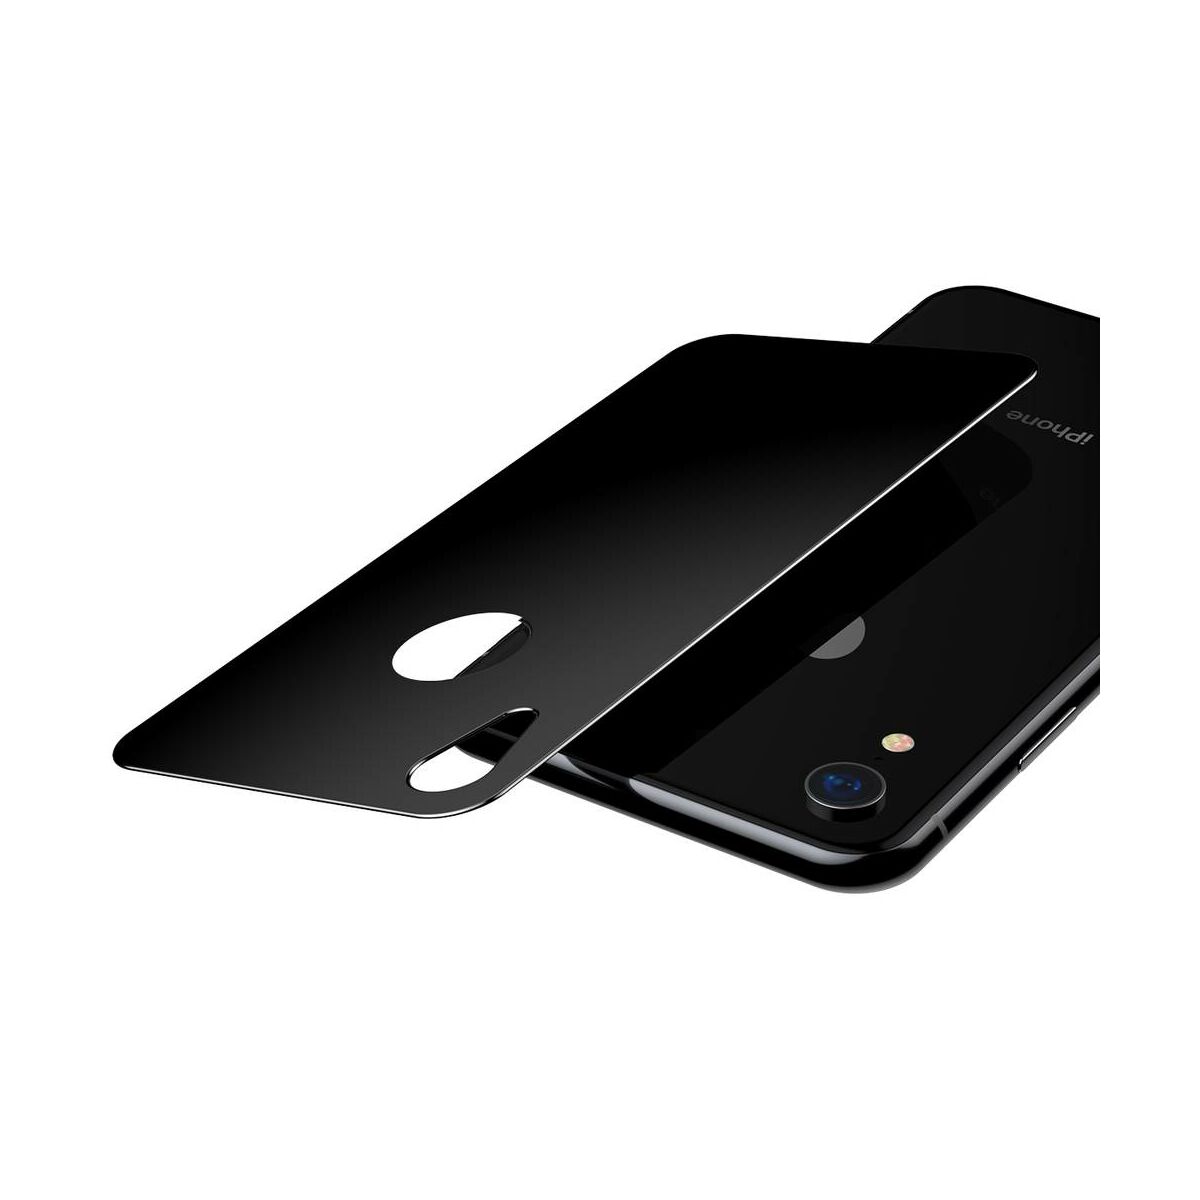 Kép 4/9 - Baseus iPhone XR/ 11 (6.1") 0.3 mm, teljes felületre edzett üveg hátlap védő fólia, fekete (SGAPIPH61-BM01)